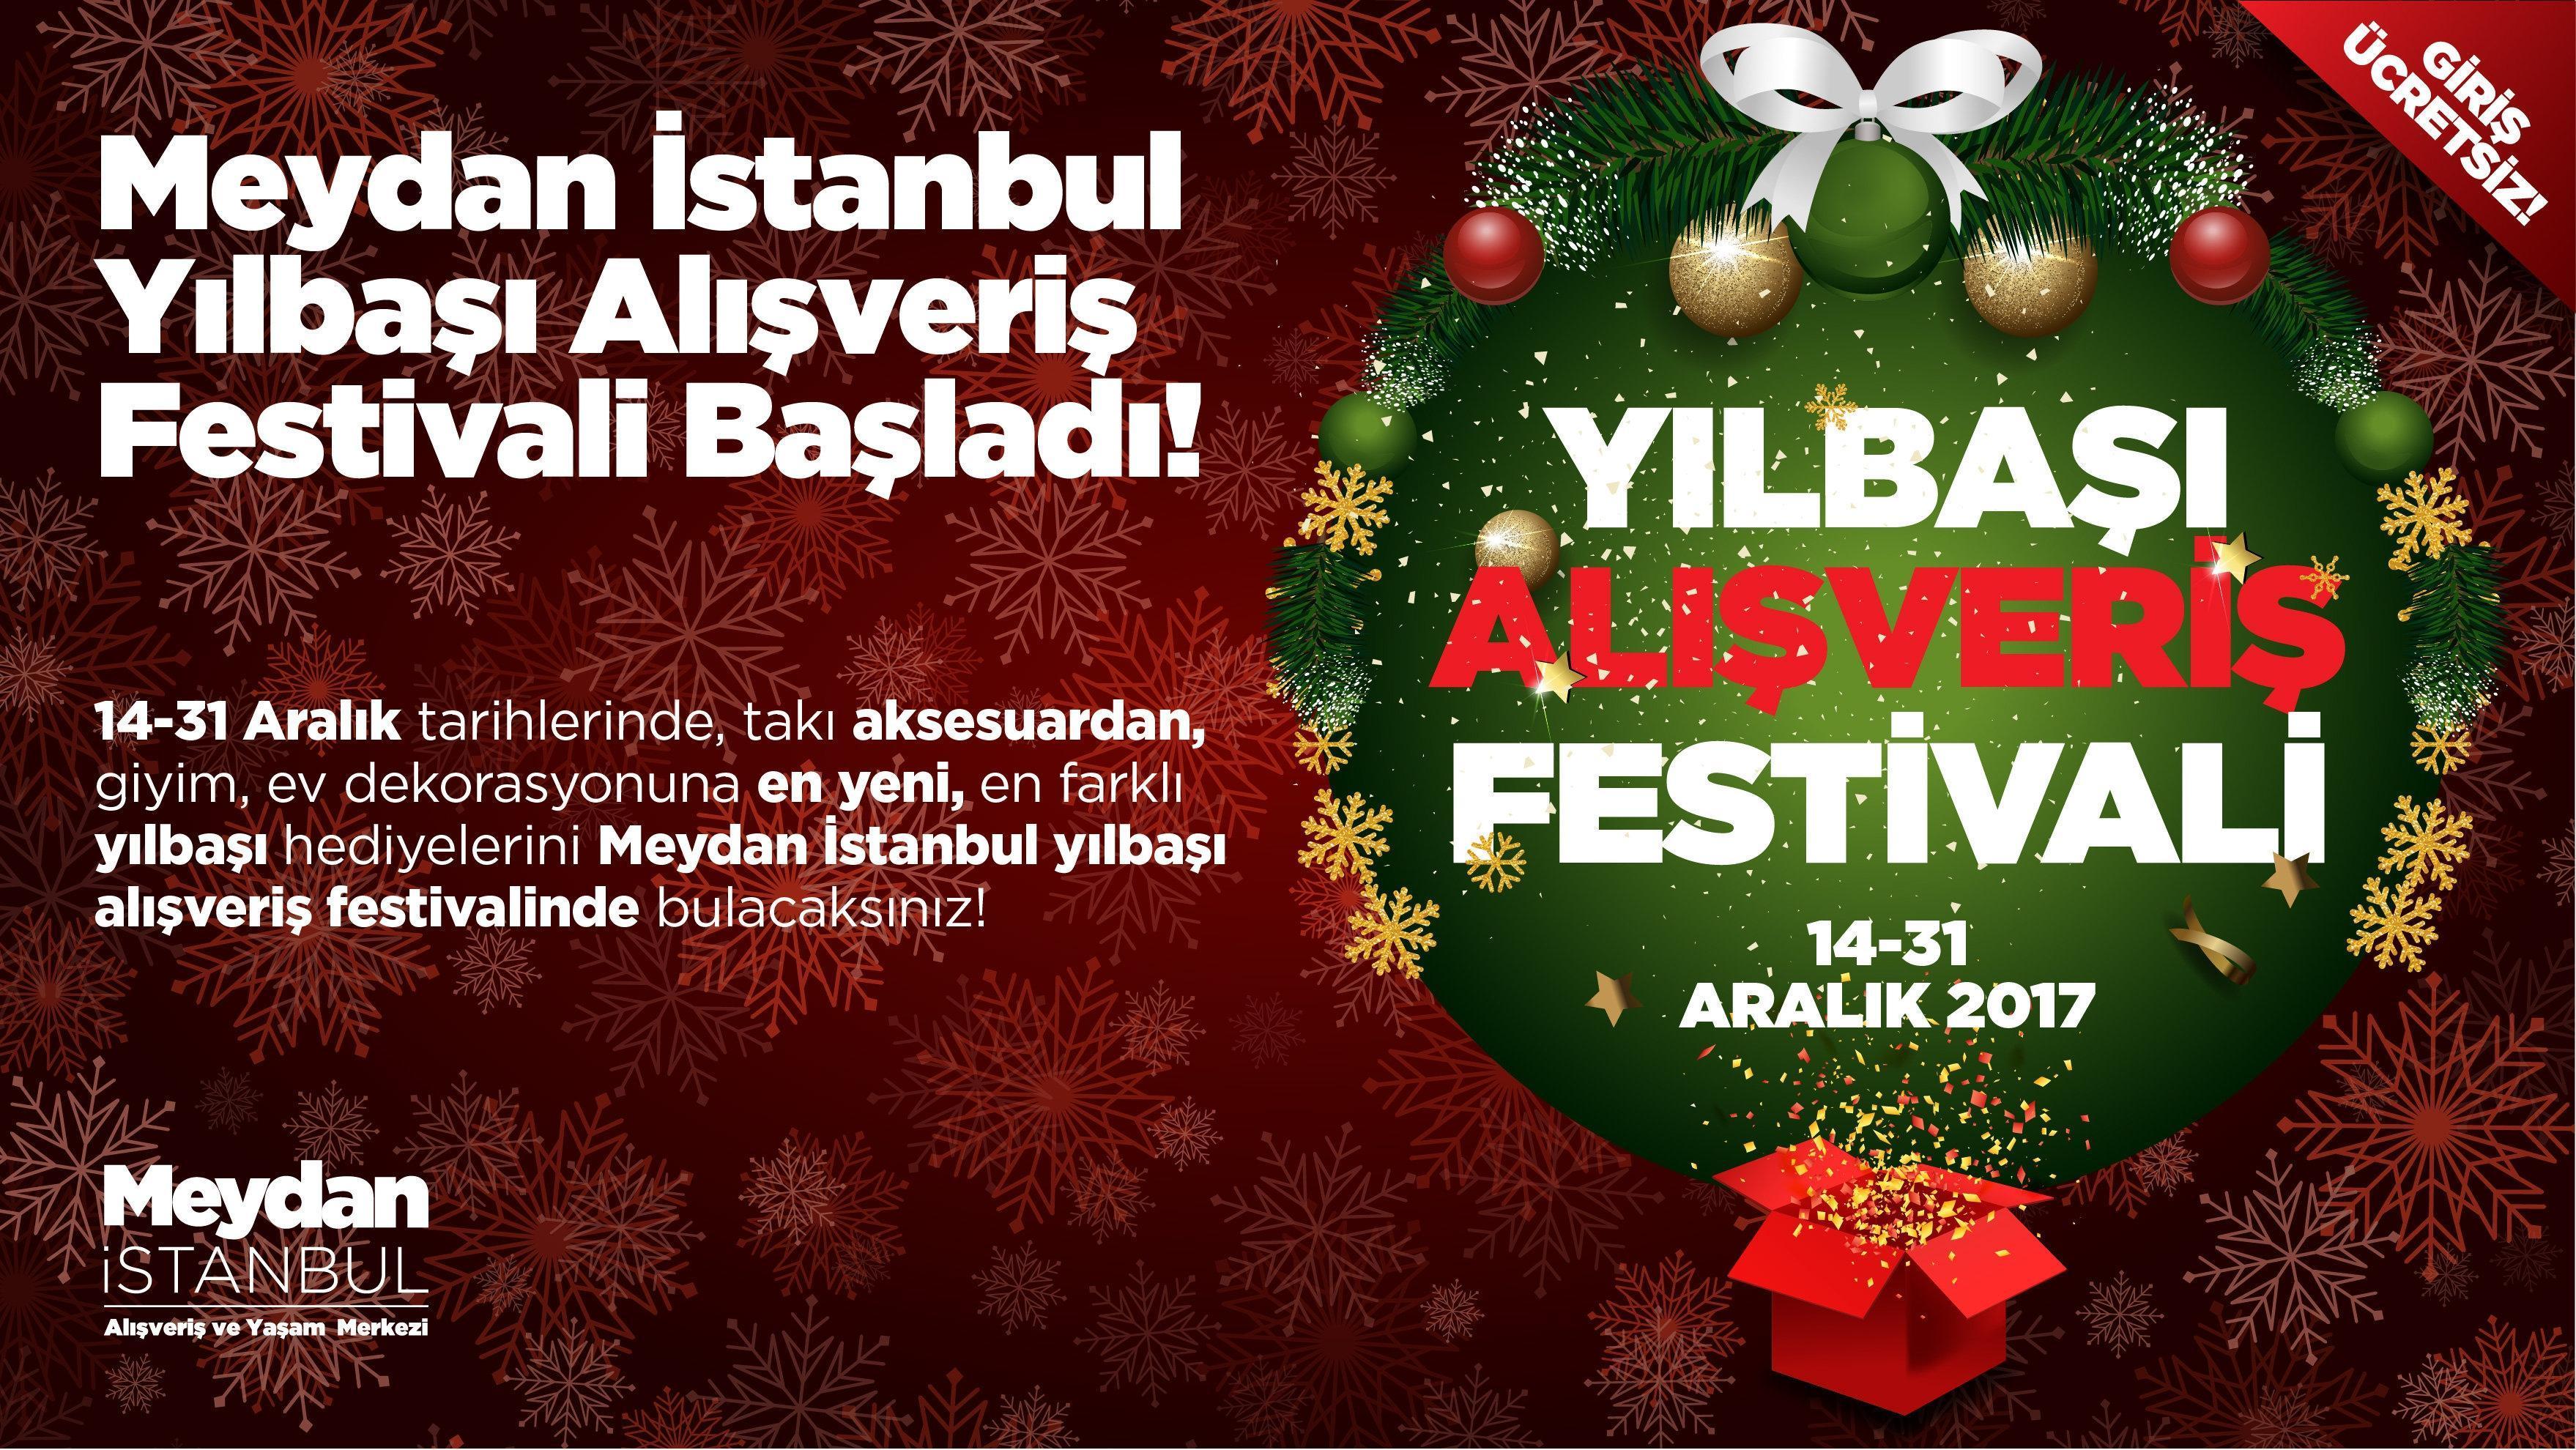 Yılbaşı alışveriş festivali Meydan İstanbul’da başladı